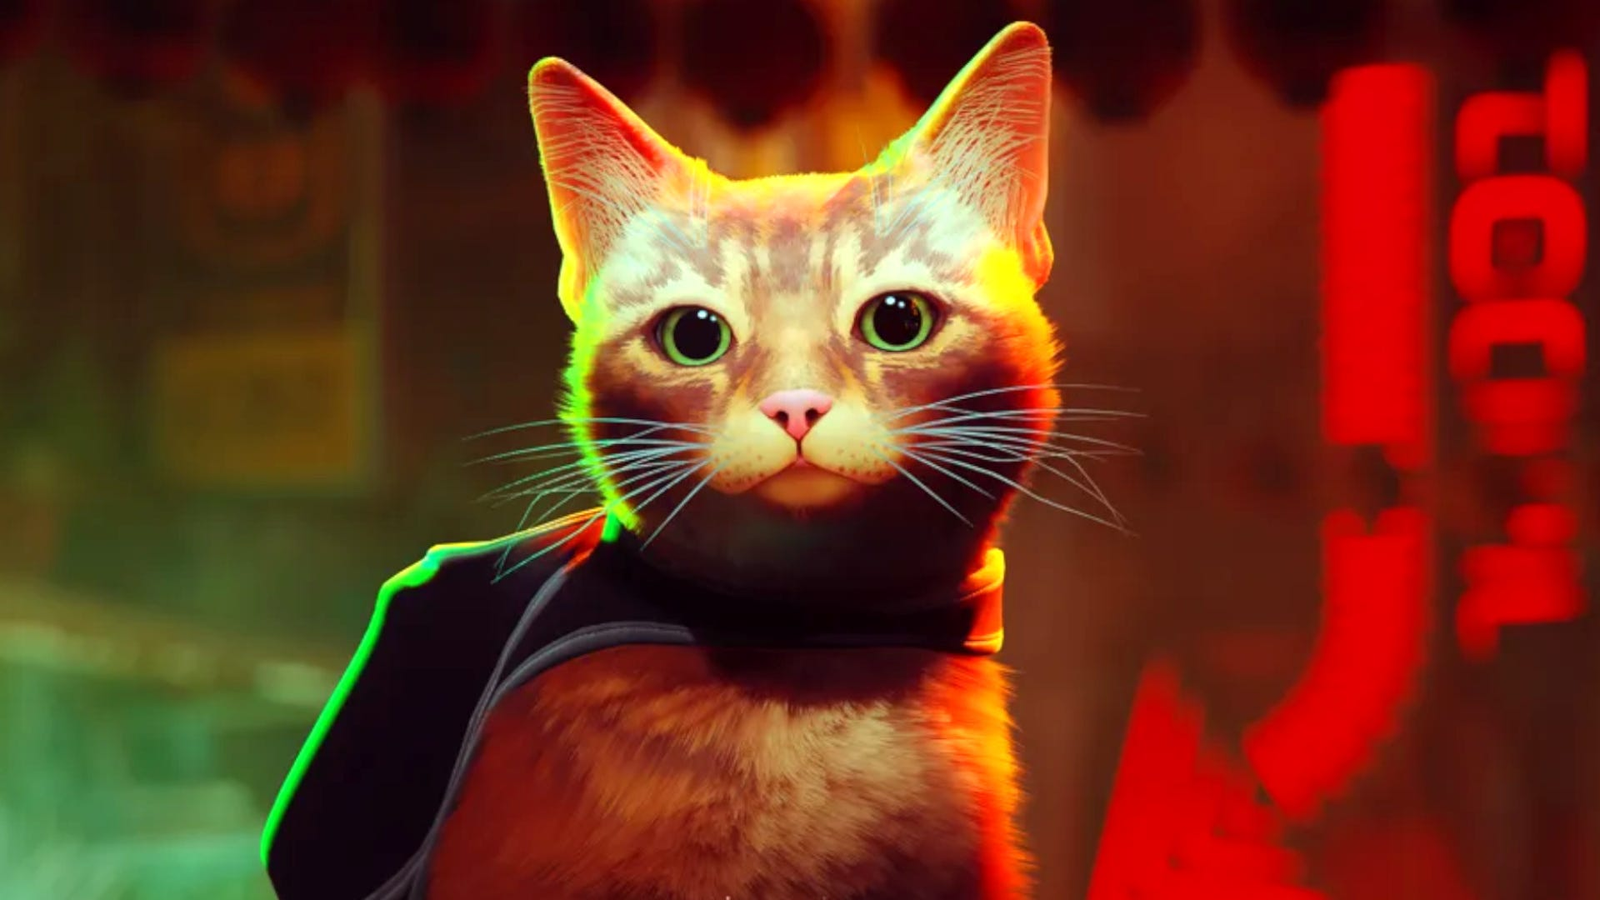 Stray: Conheça o gato que serviu de inspiração para protagonista do jogo